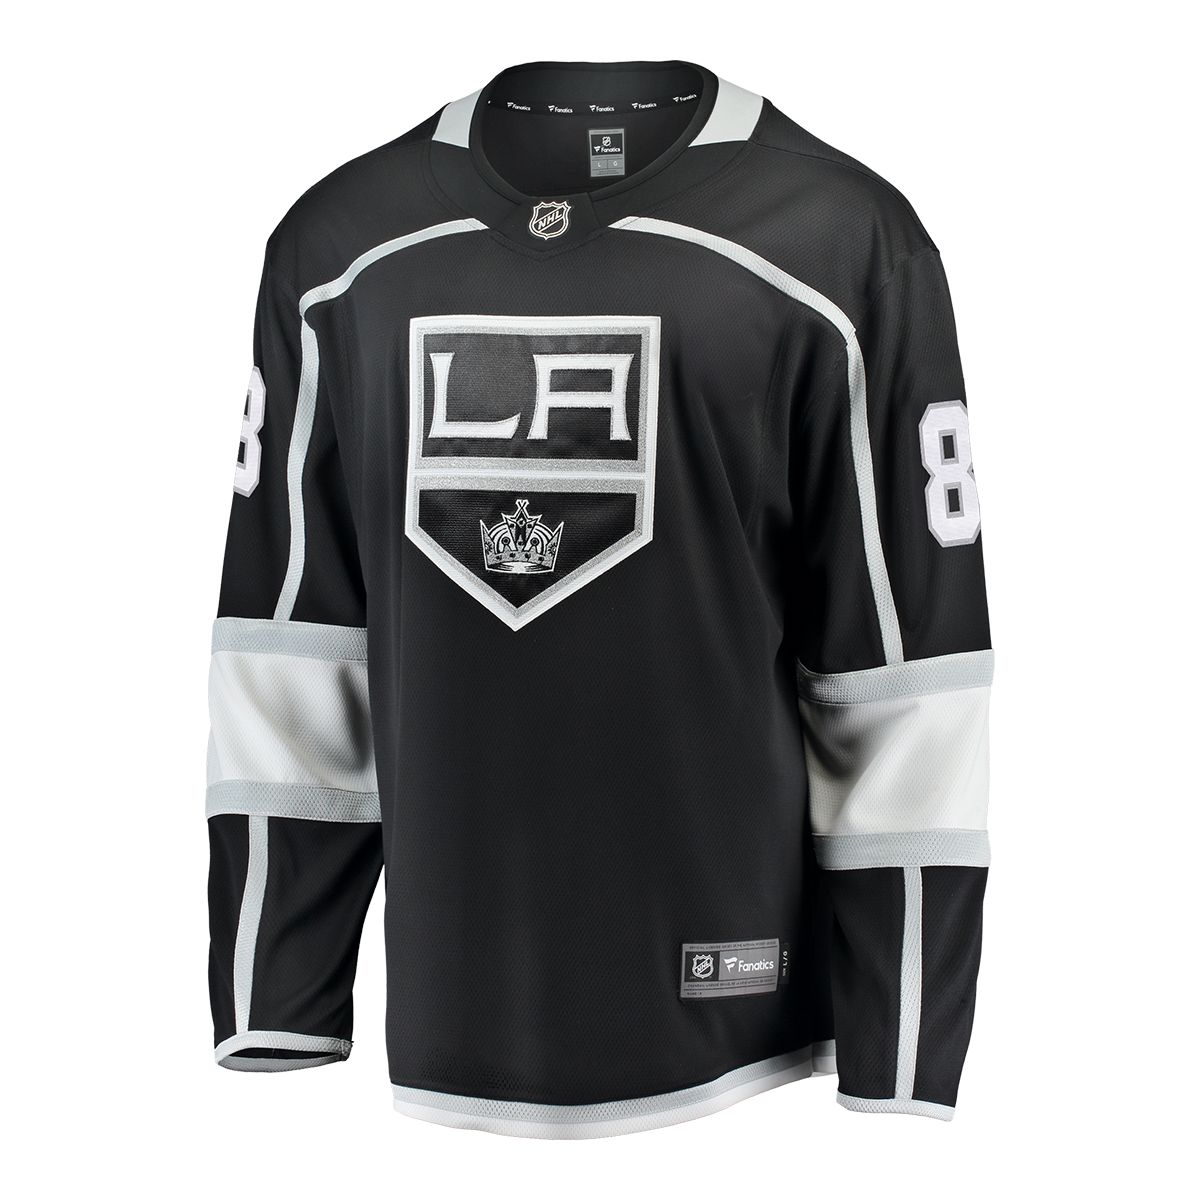 NHL Announces Uniform Deal With Fanatics